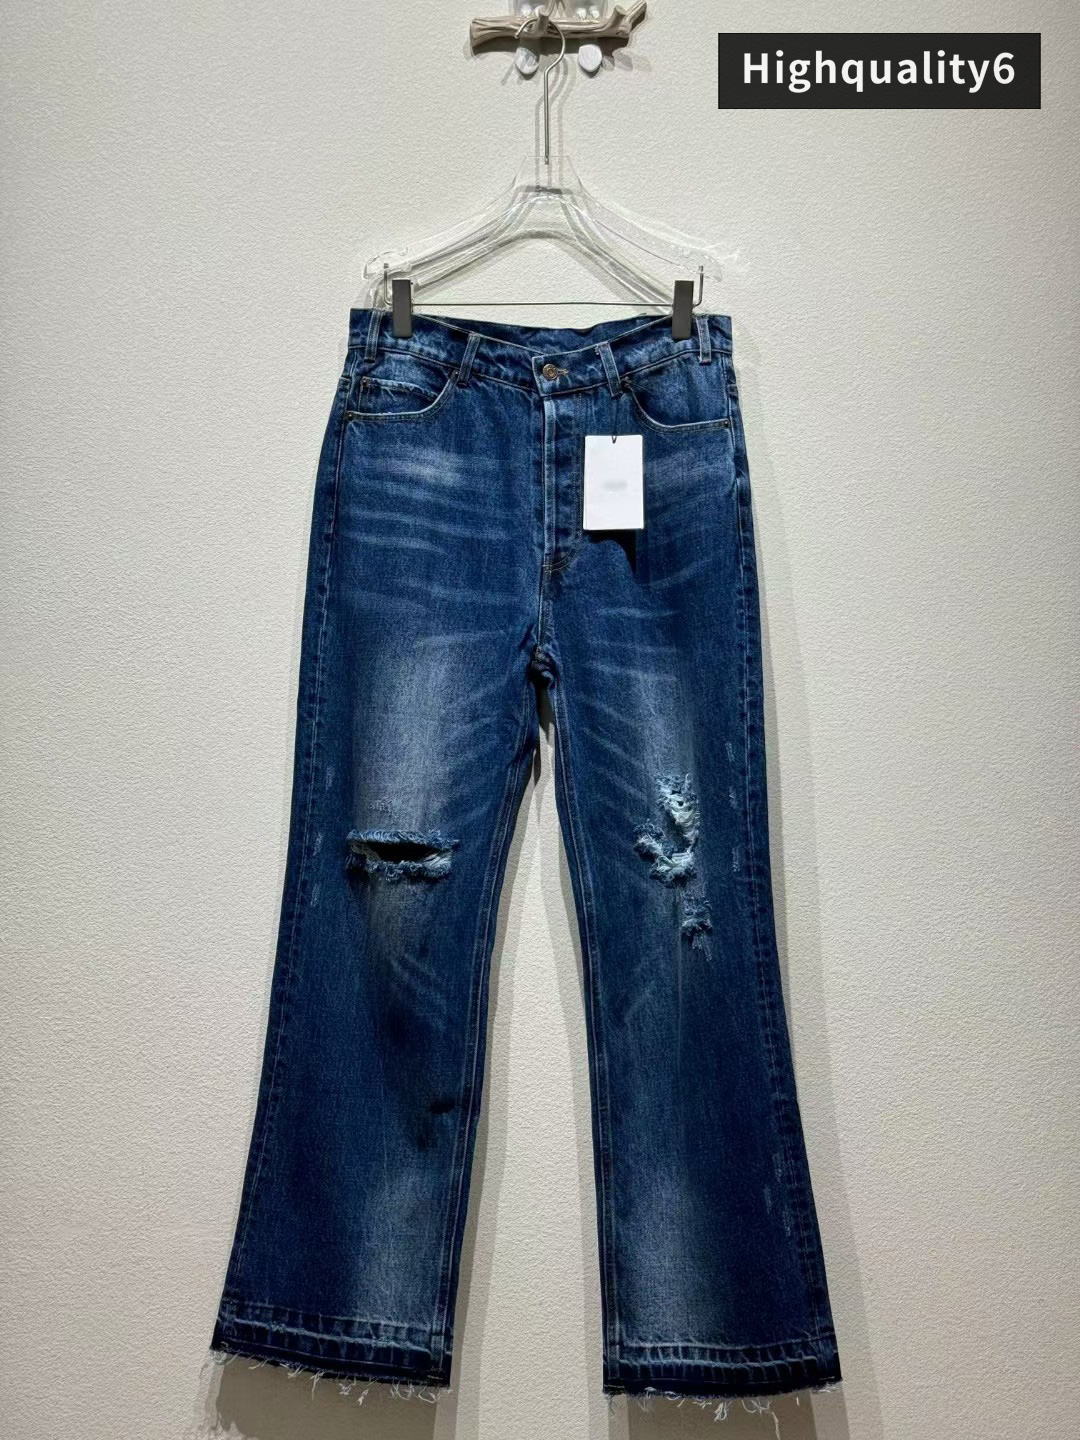 CE Brand högkvalitativa jeans, klassiska nödställda tvättade jeans, triumfbågskurna mäns smala fit jeans, fashionabla och mångsidiga långa byxor, gratis frakt